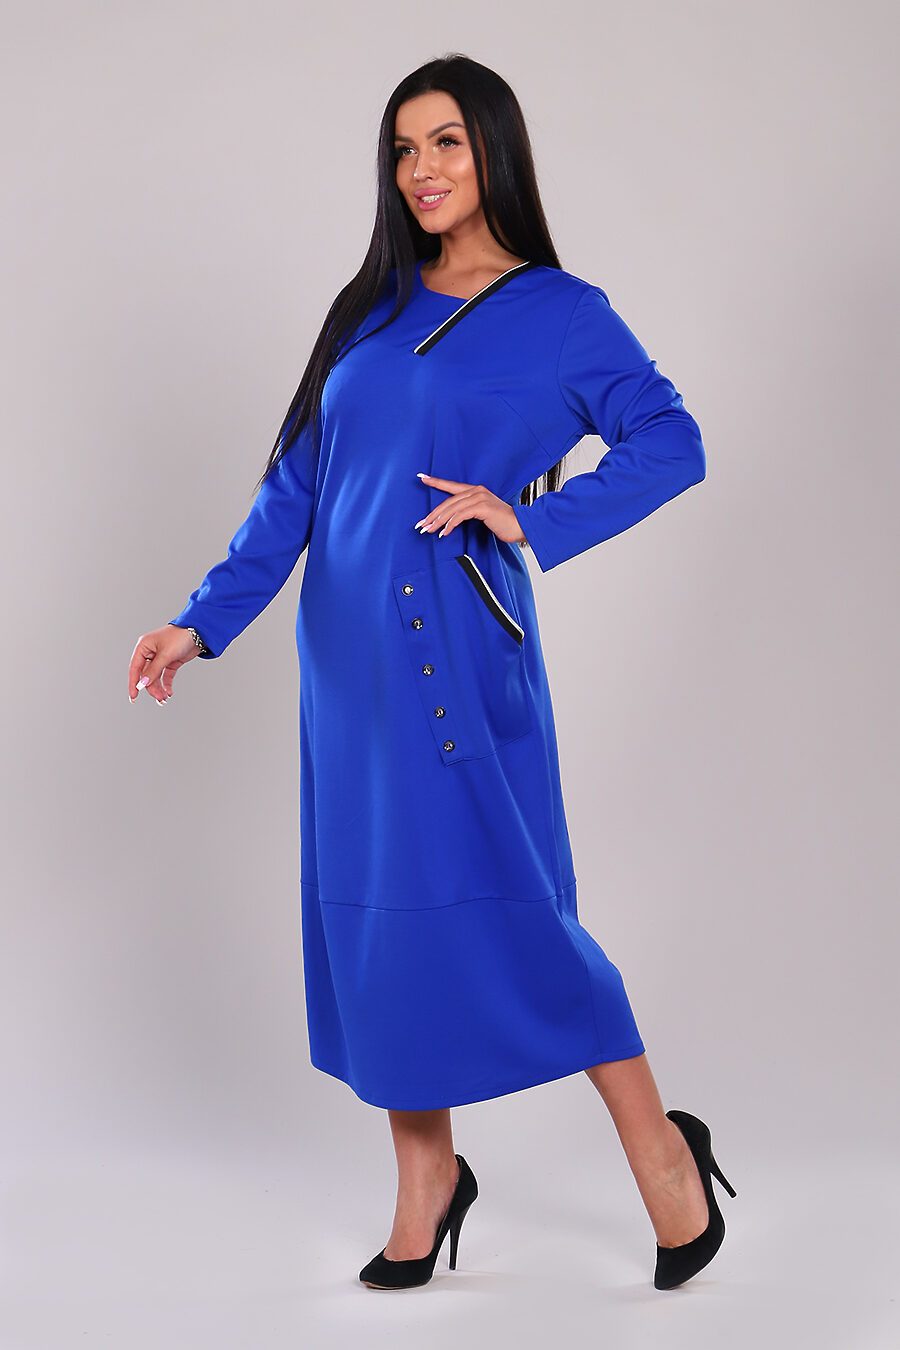 Платье для женщин НАТАЛИ 741198 купить оптом от производителя. Совместная покупка женской одежды в OptMoyo